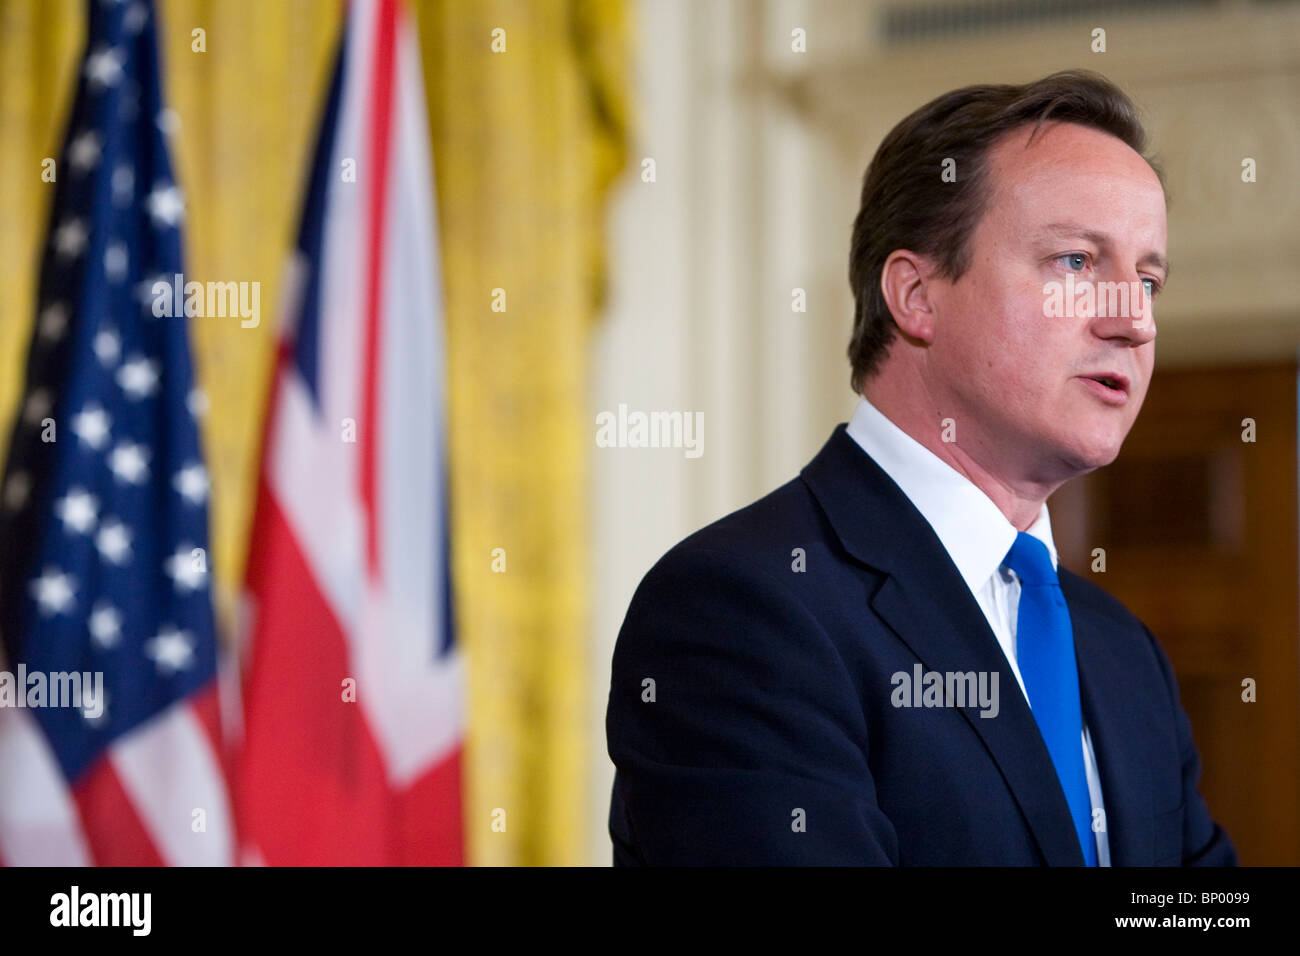 El Primer Ministro del Reino Unido, David Cameron participa en una conferencia de prensa conjunta en la Casa Blanca. Foto de stock